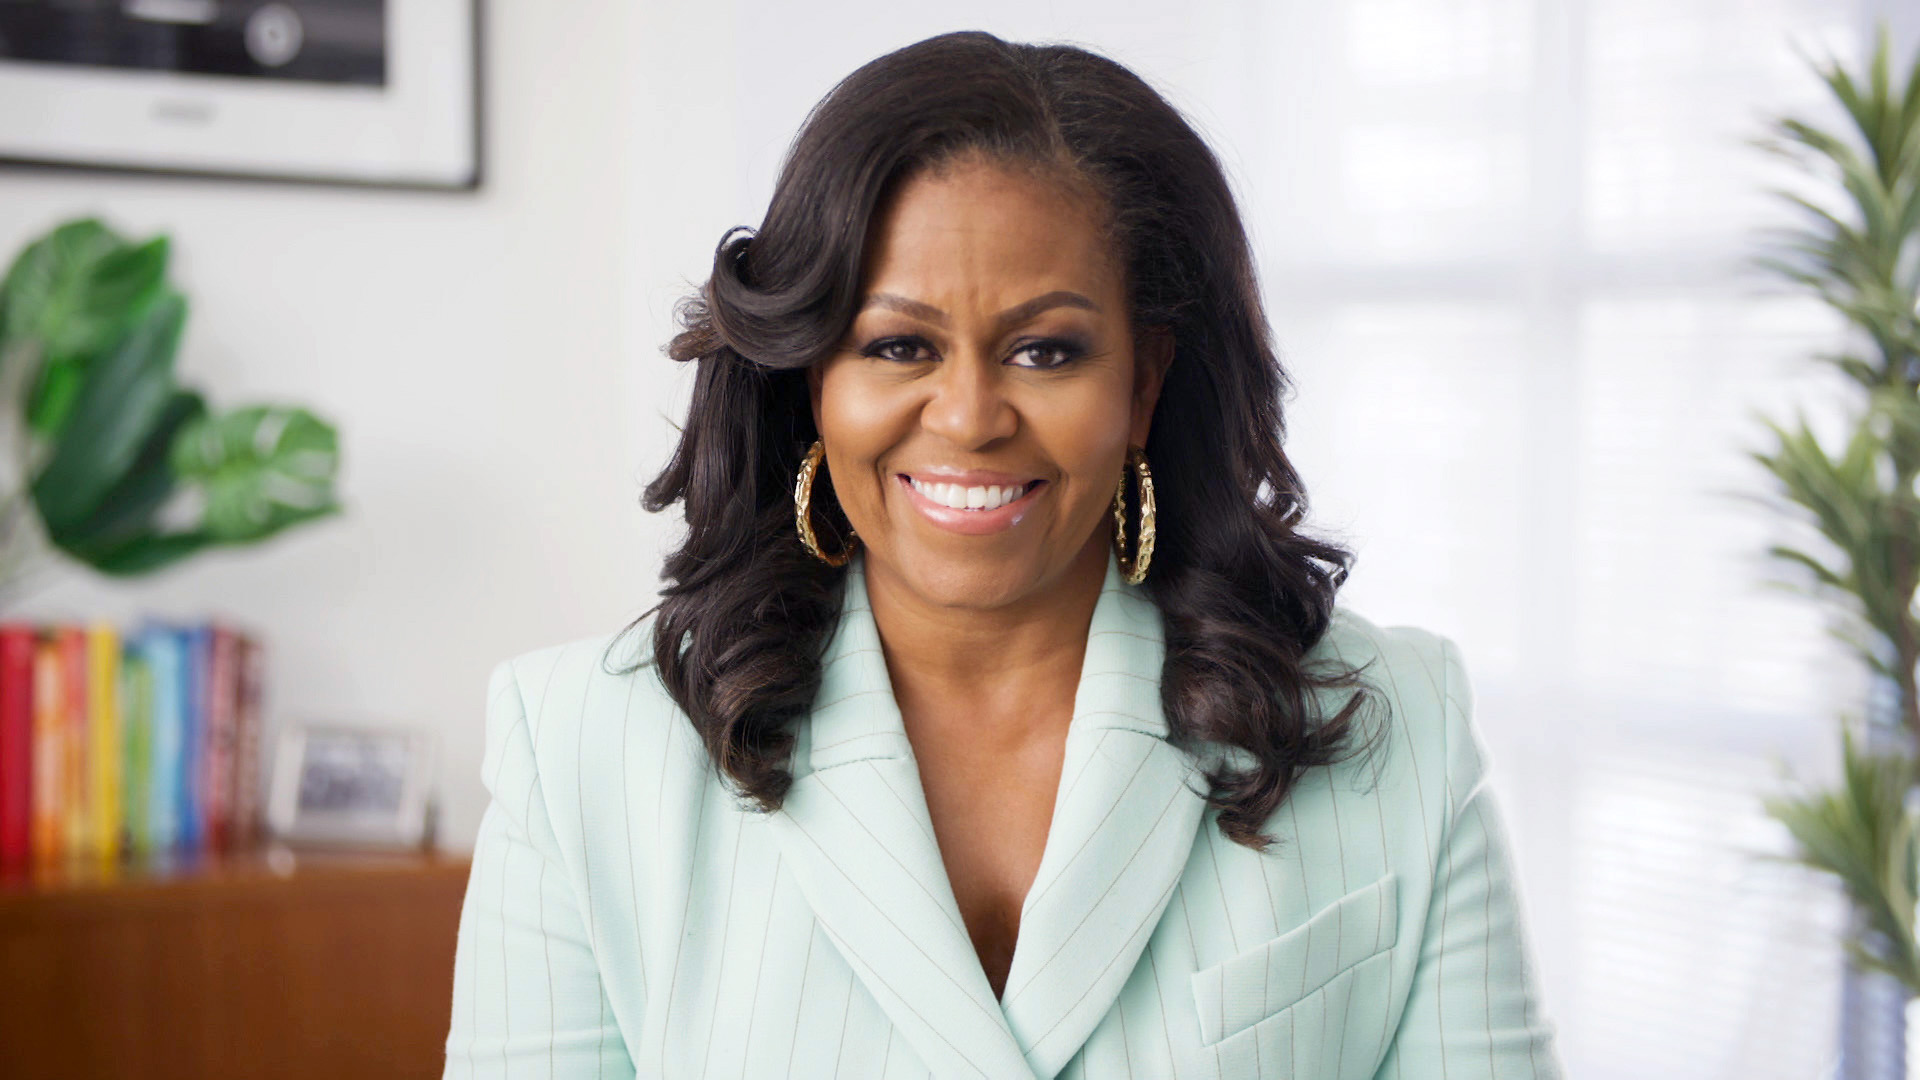 Michelle Obama wearing a seafoam green jacket